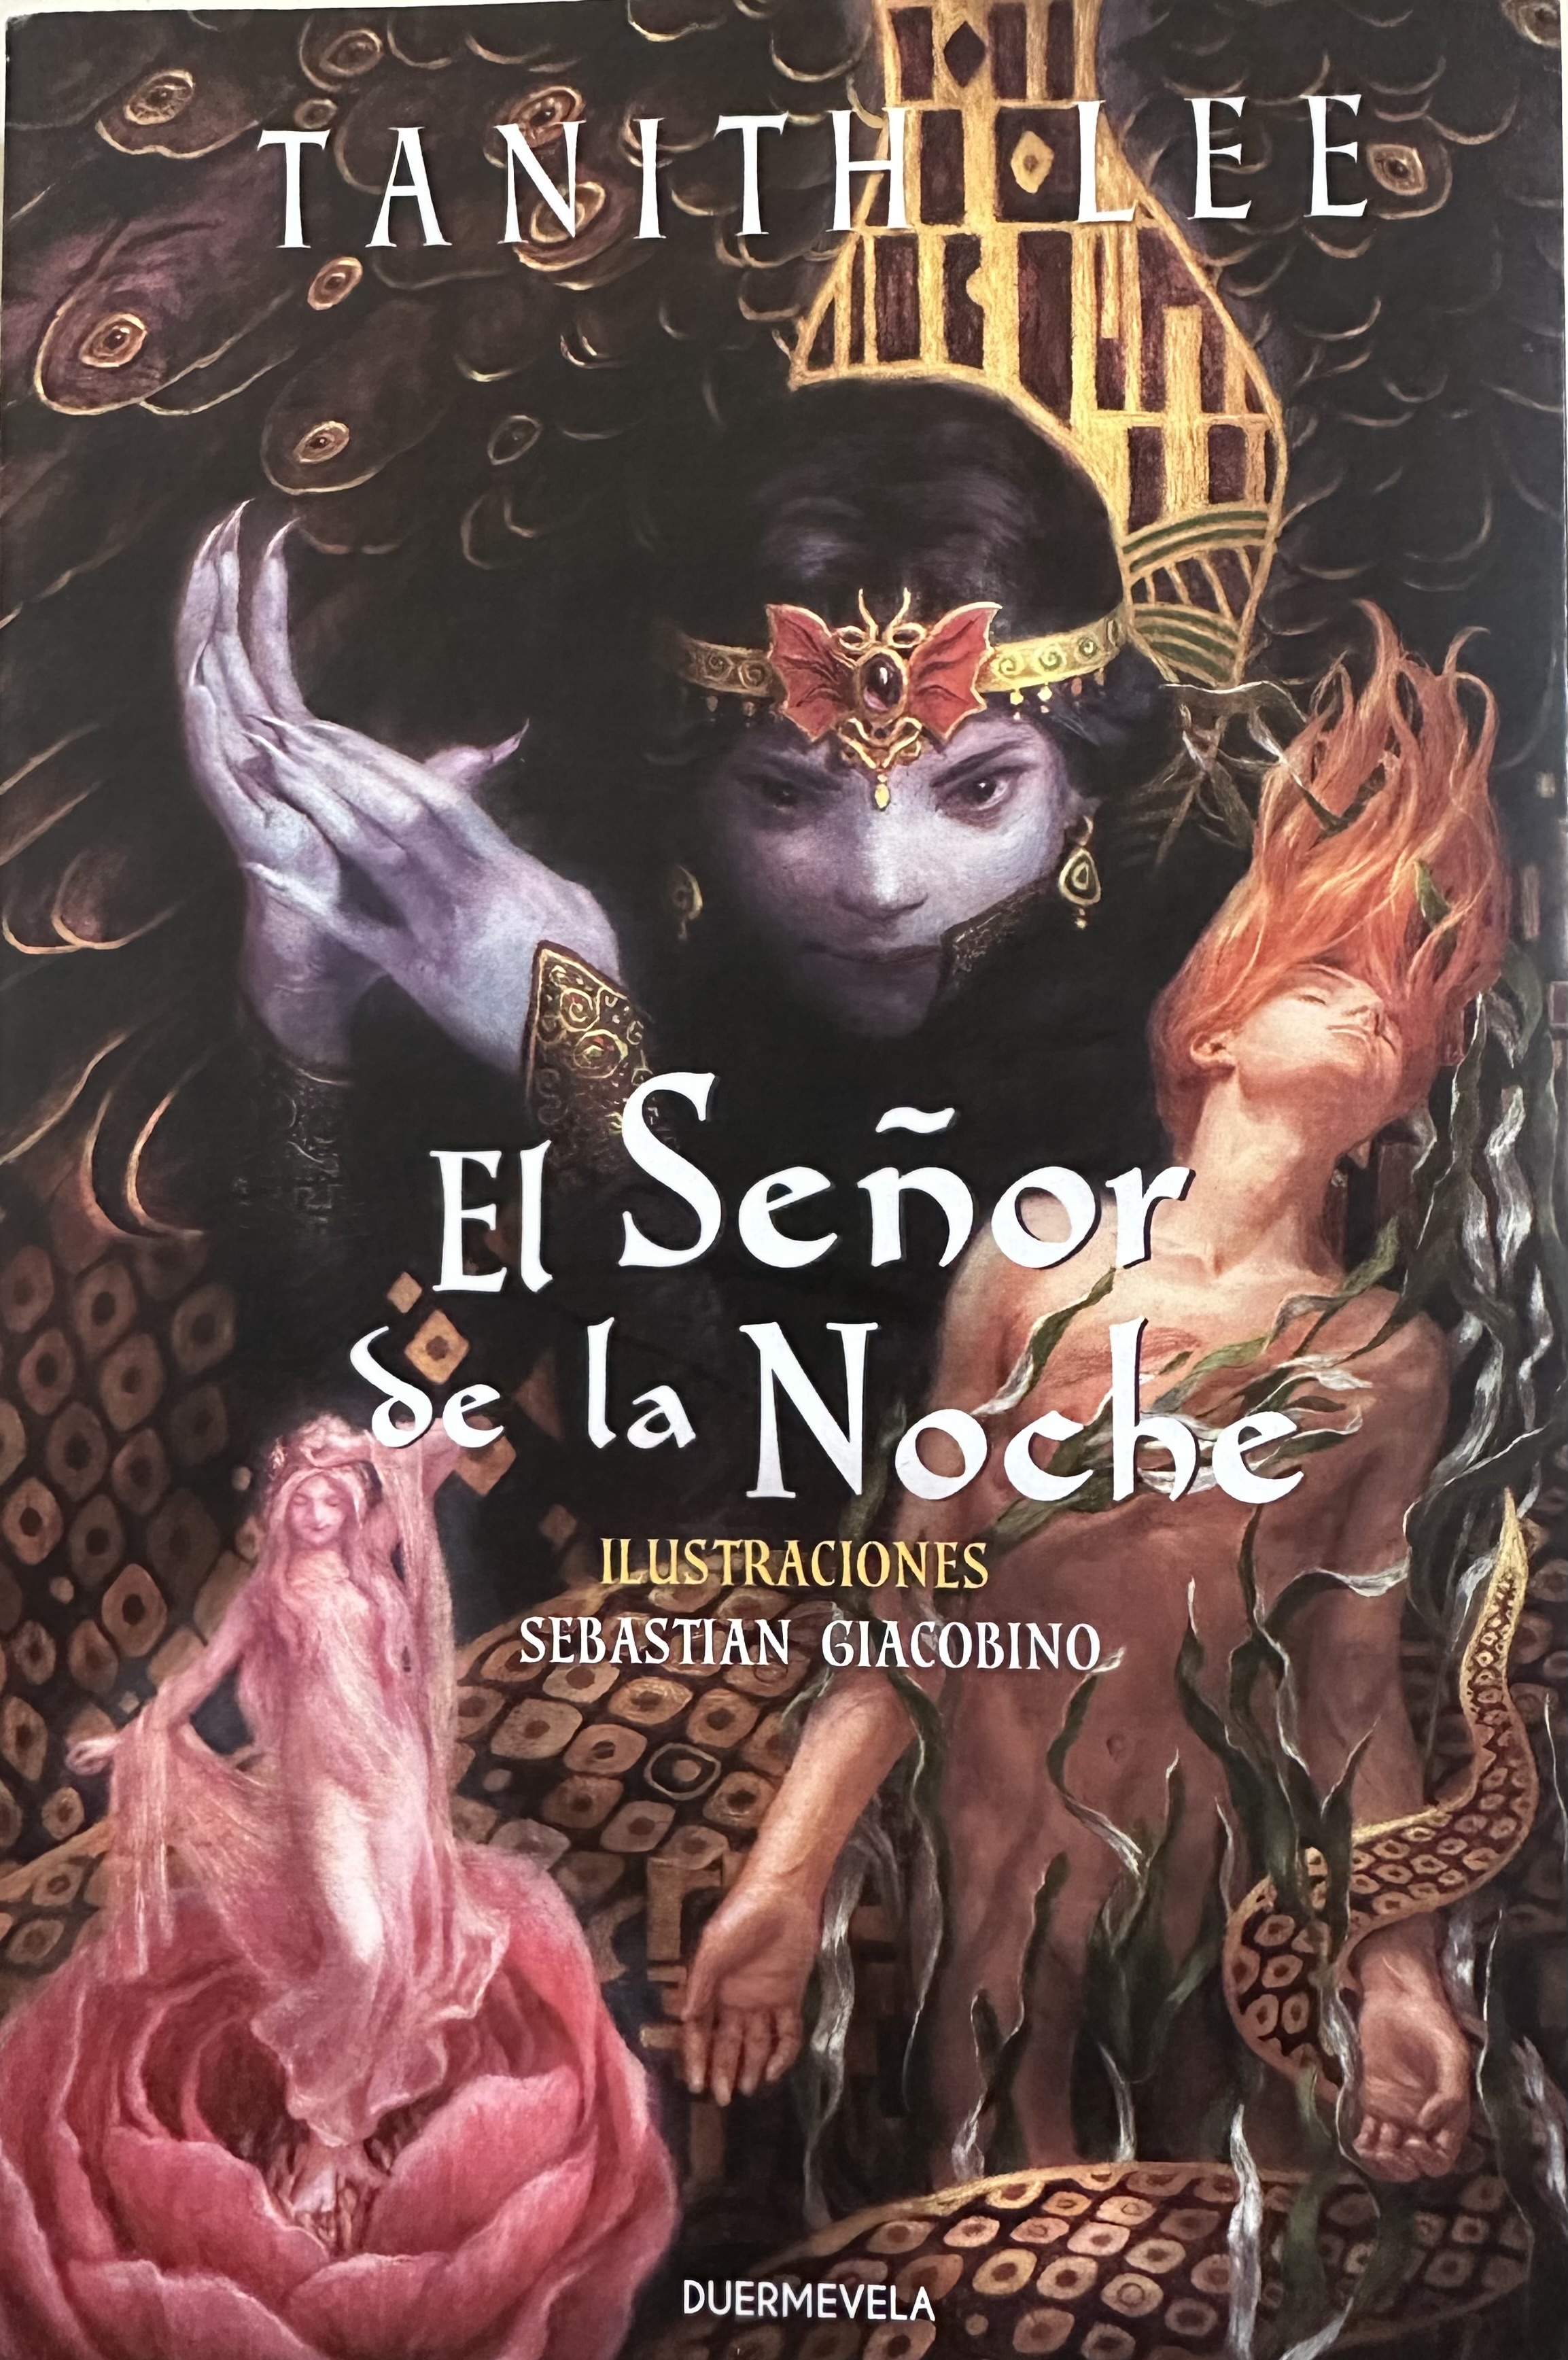 El Señor De La Noche (Night's Master)